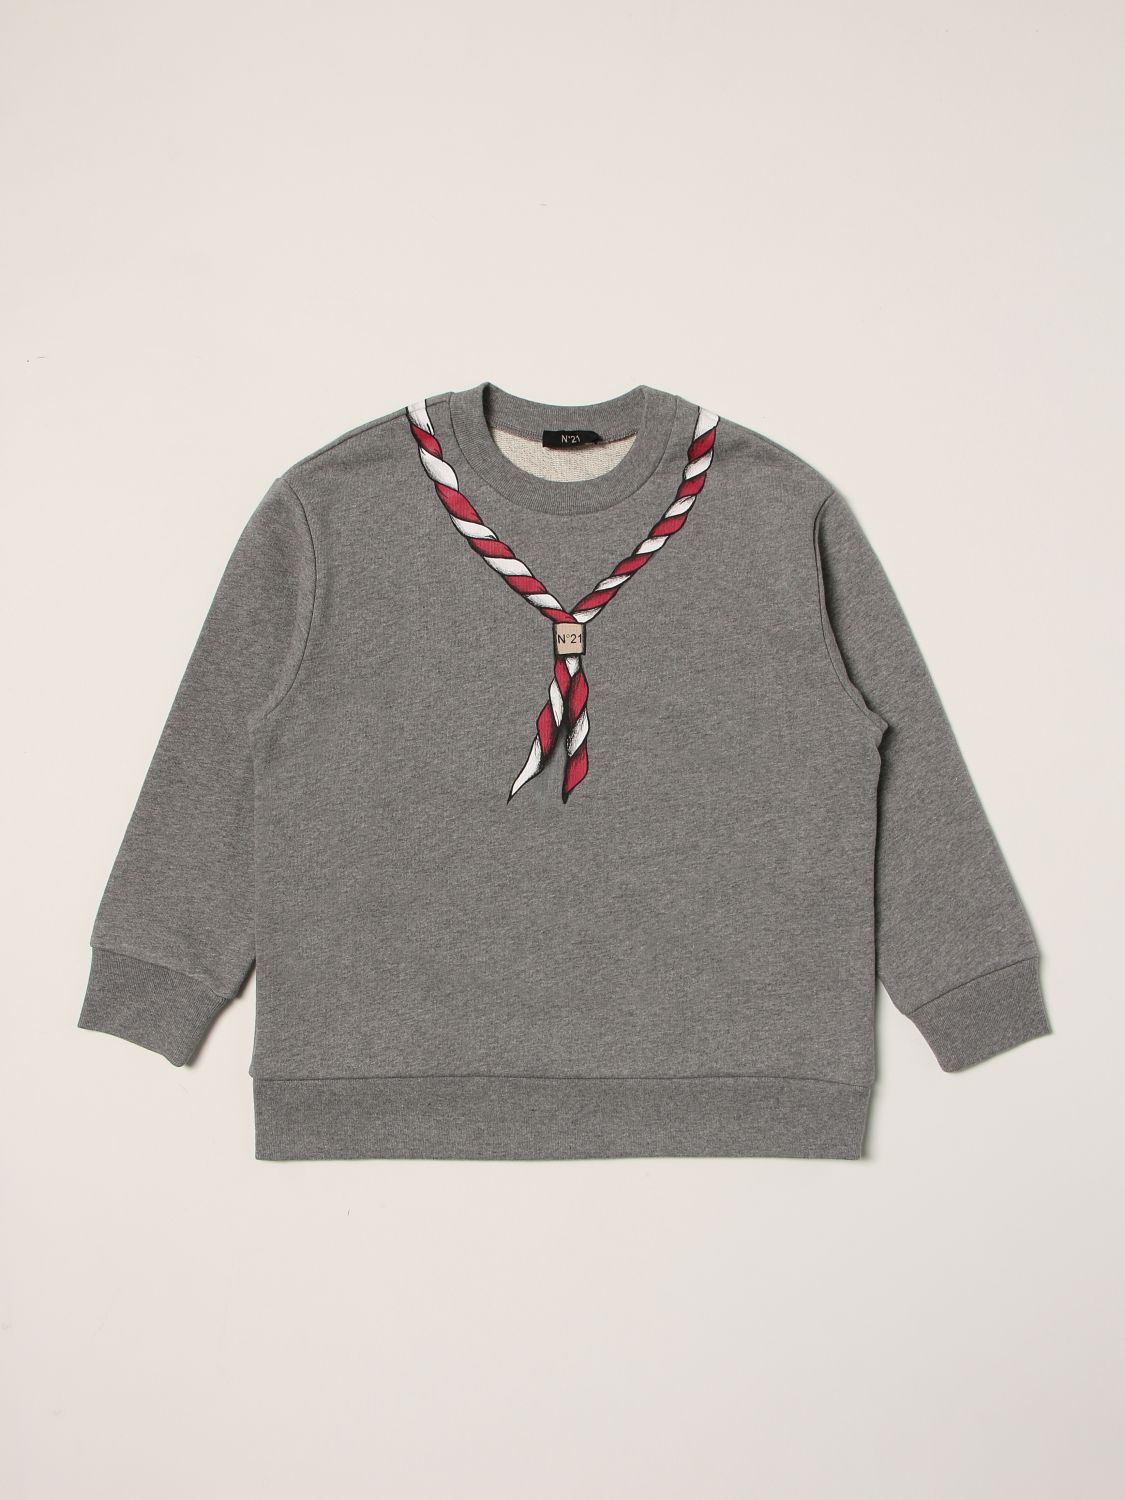 セーター N° 21: セーター 男の子 N° 21 グレー 1